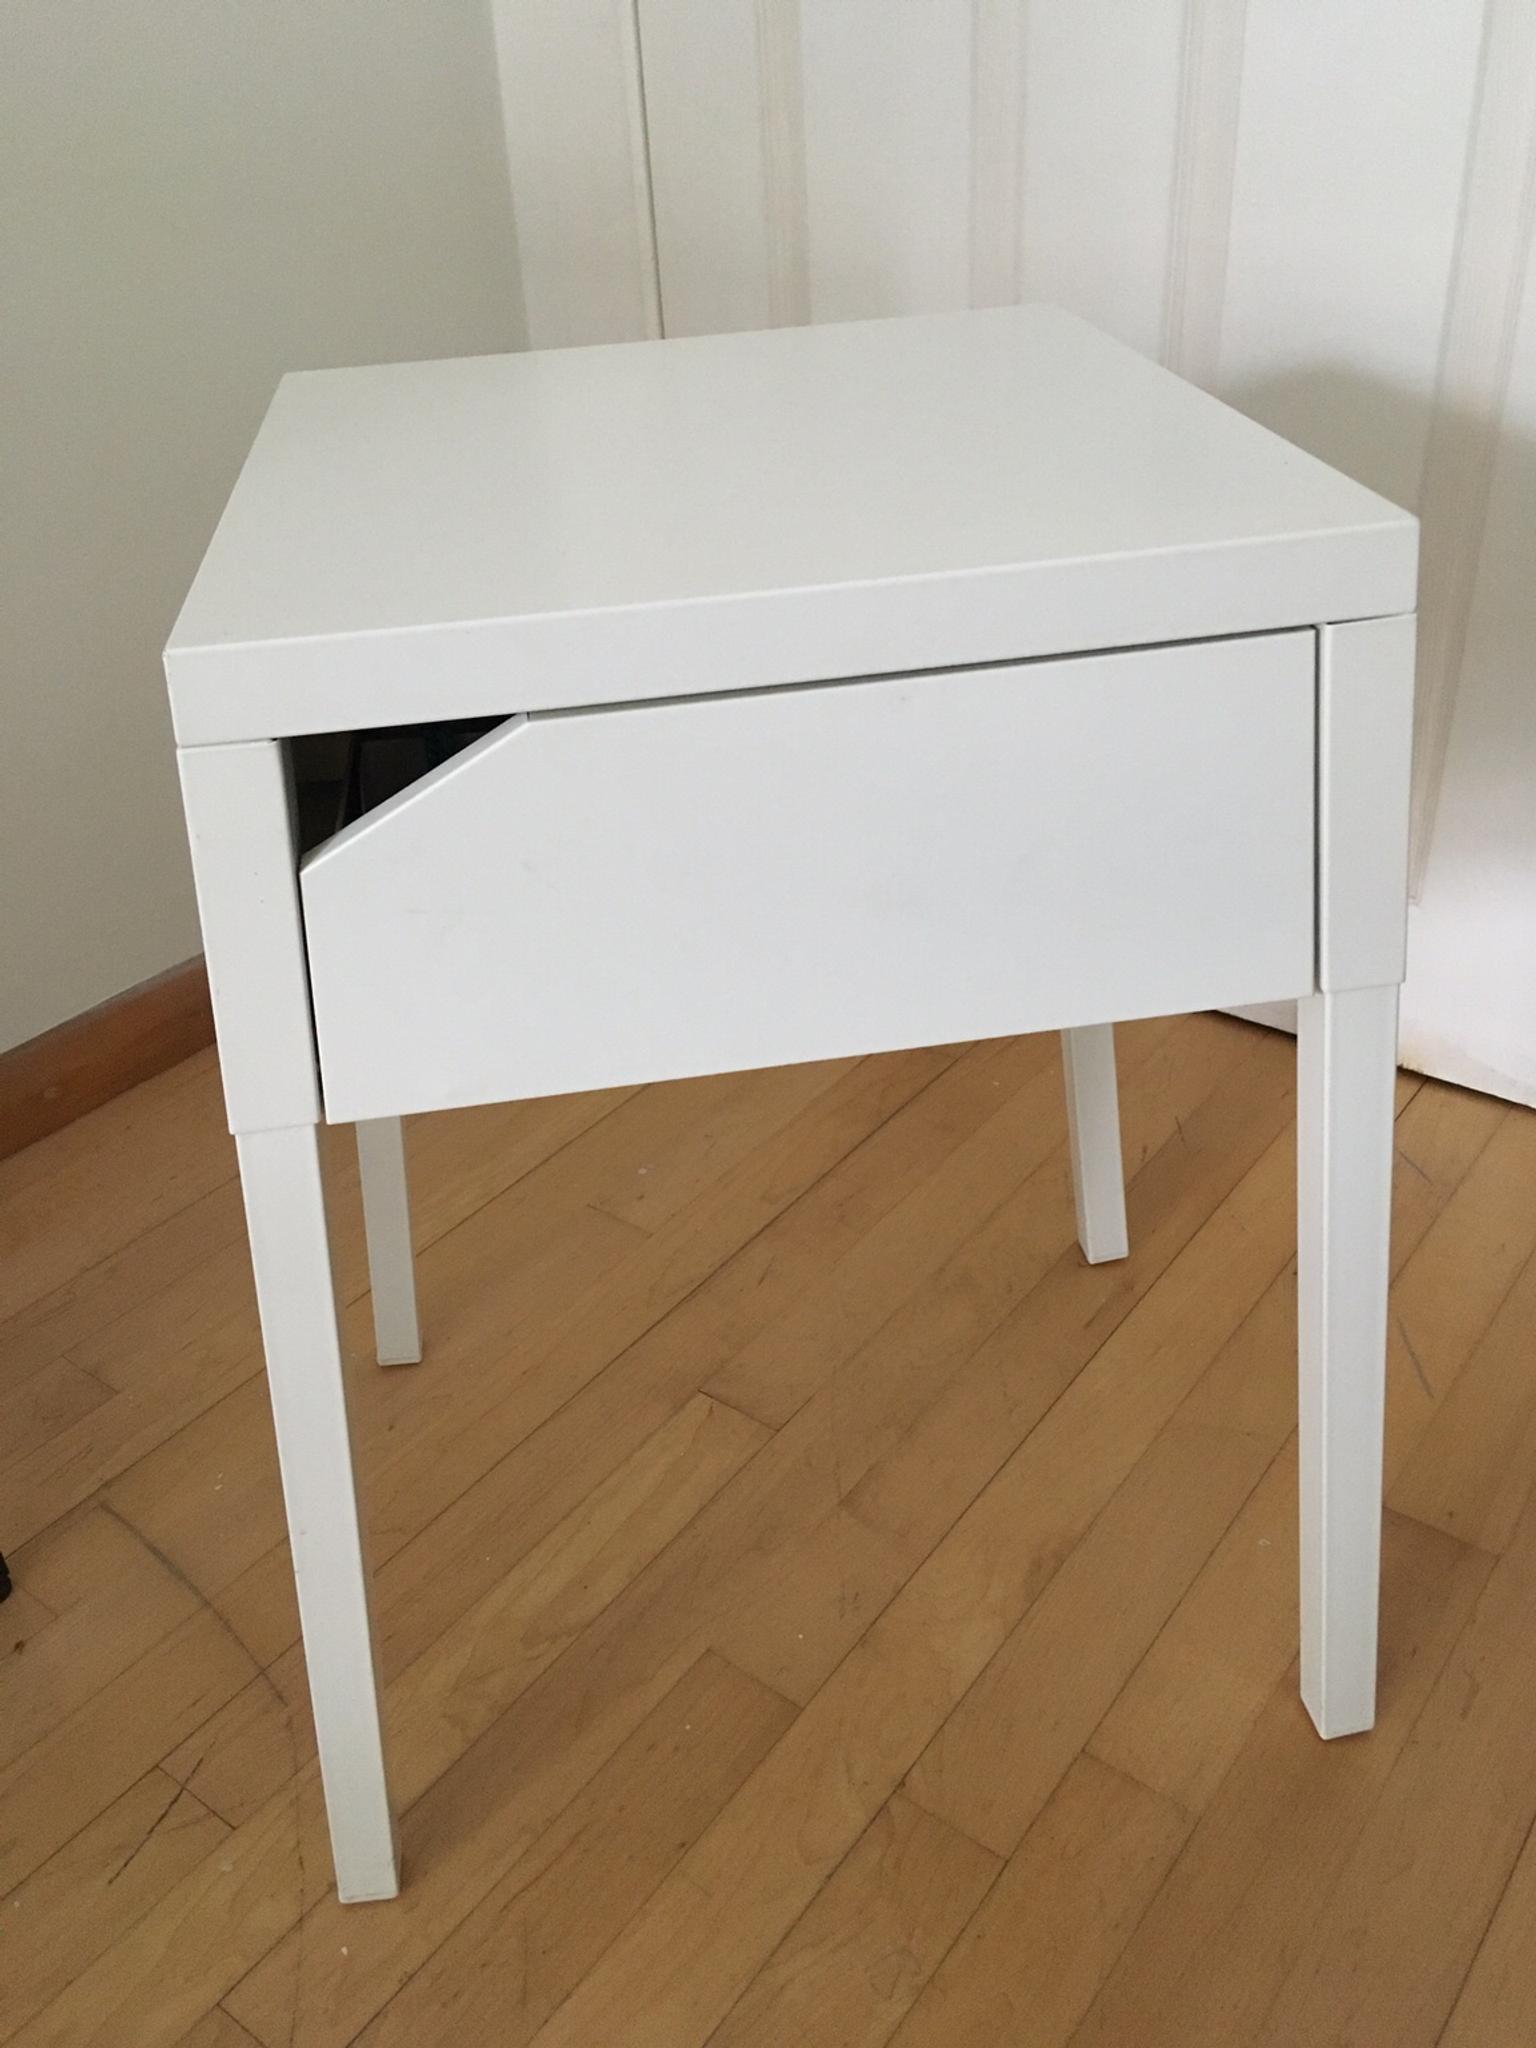 Ikea Selje Bedside Table White In E11 London Fur 10 00 Zum